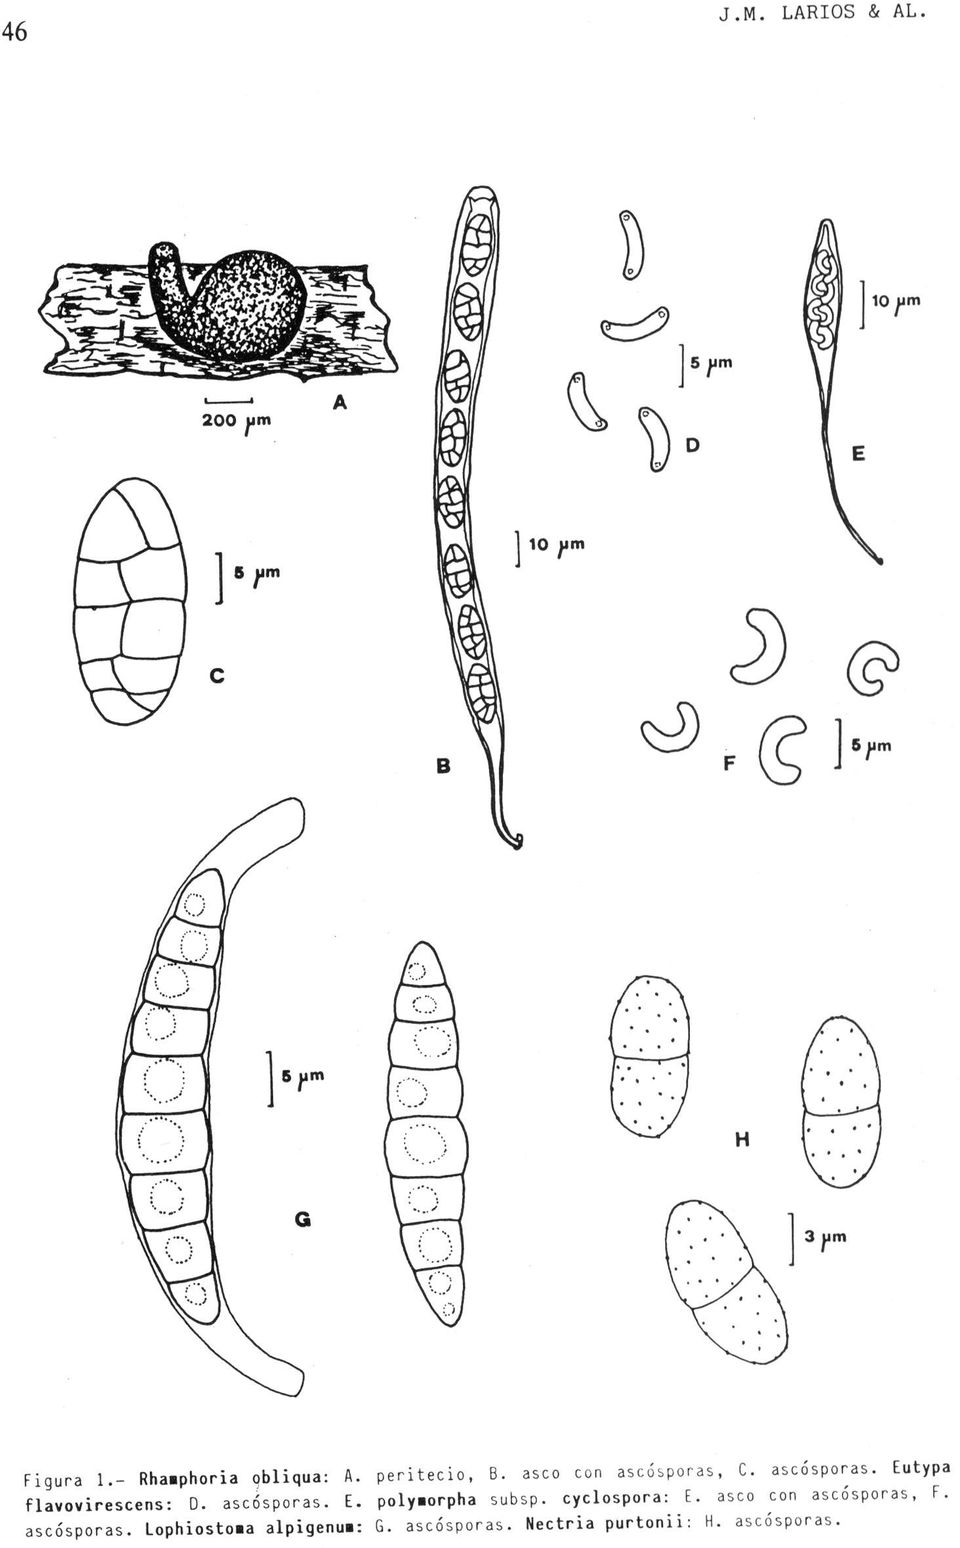 Eutypa flavovirescens: D. asccisporas. E. polymorpha subsp. cyclospora: E.